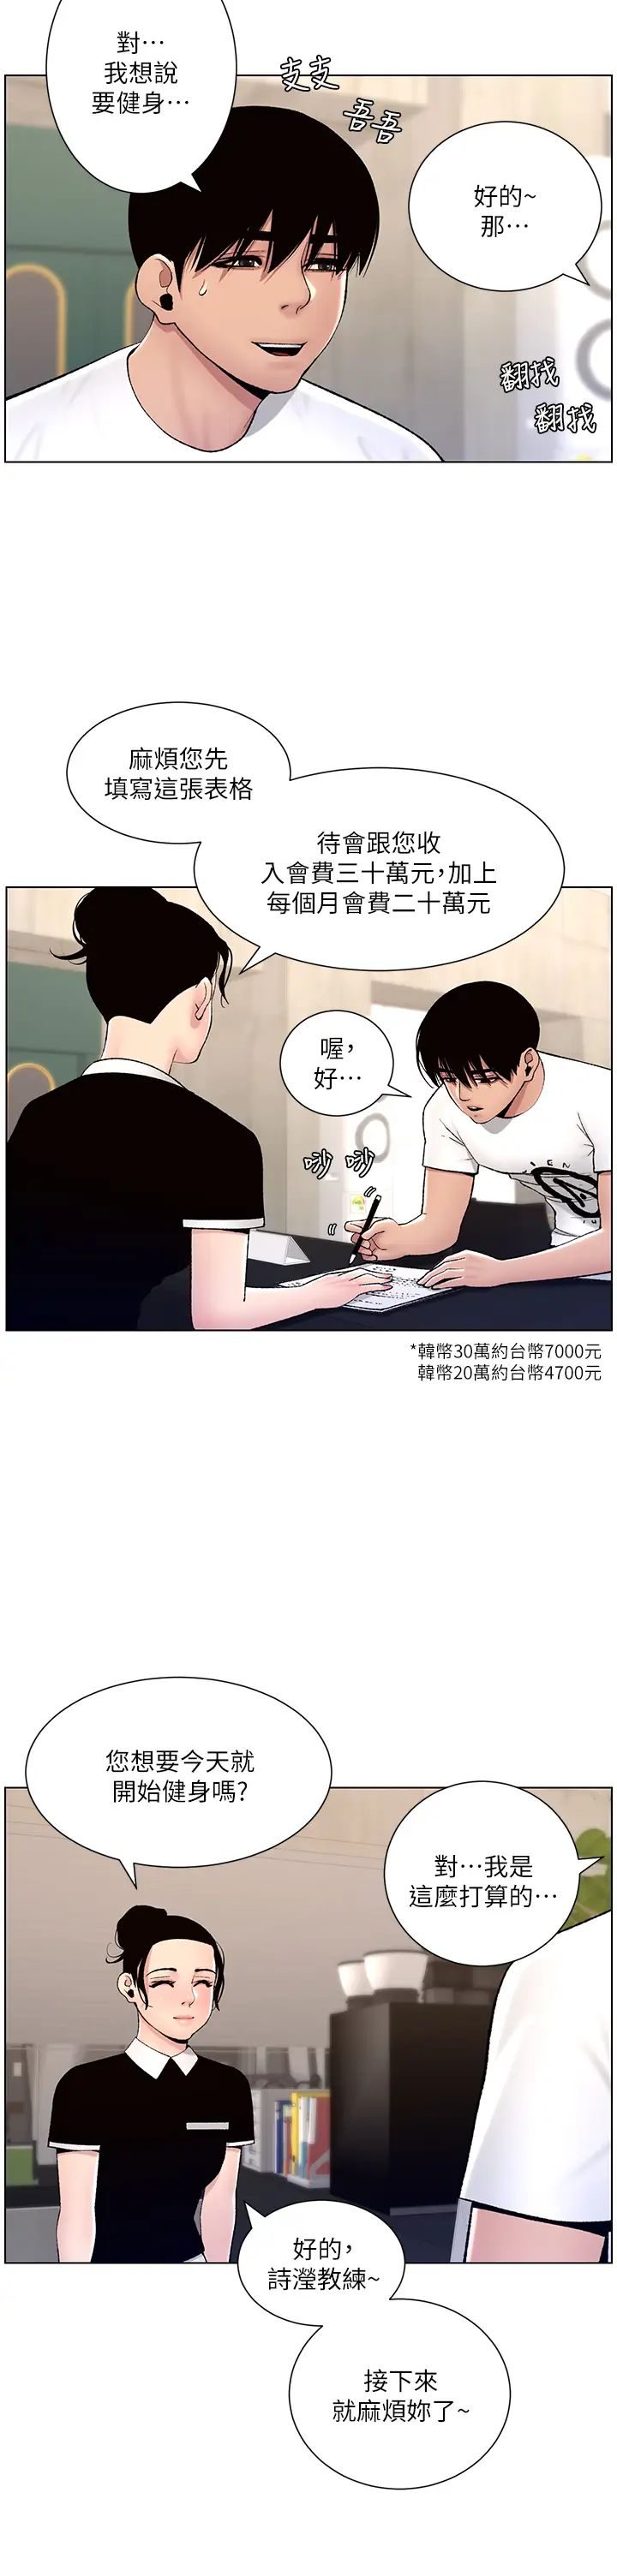 韩国污漫画 帝王App 第12话 要一起来流点汗吗？ 40